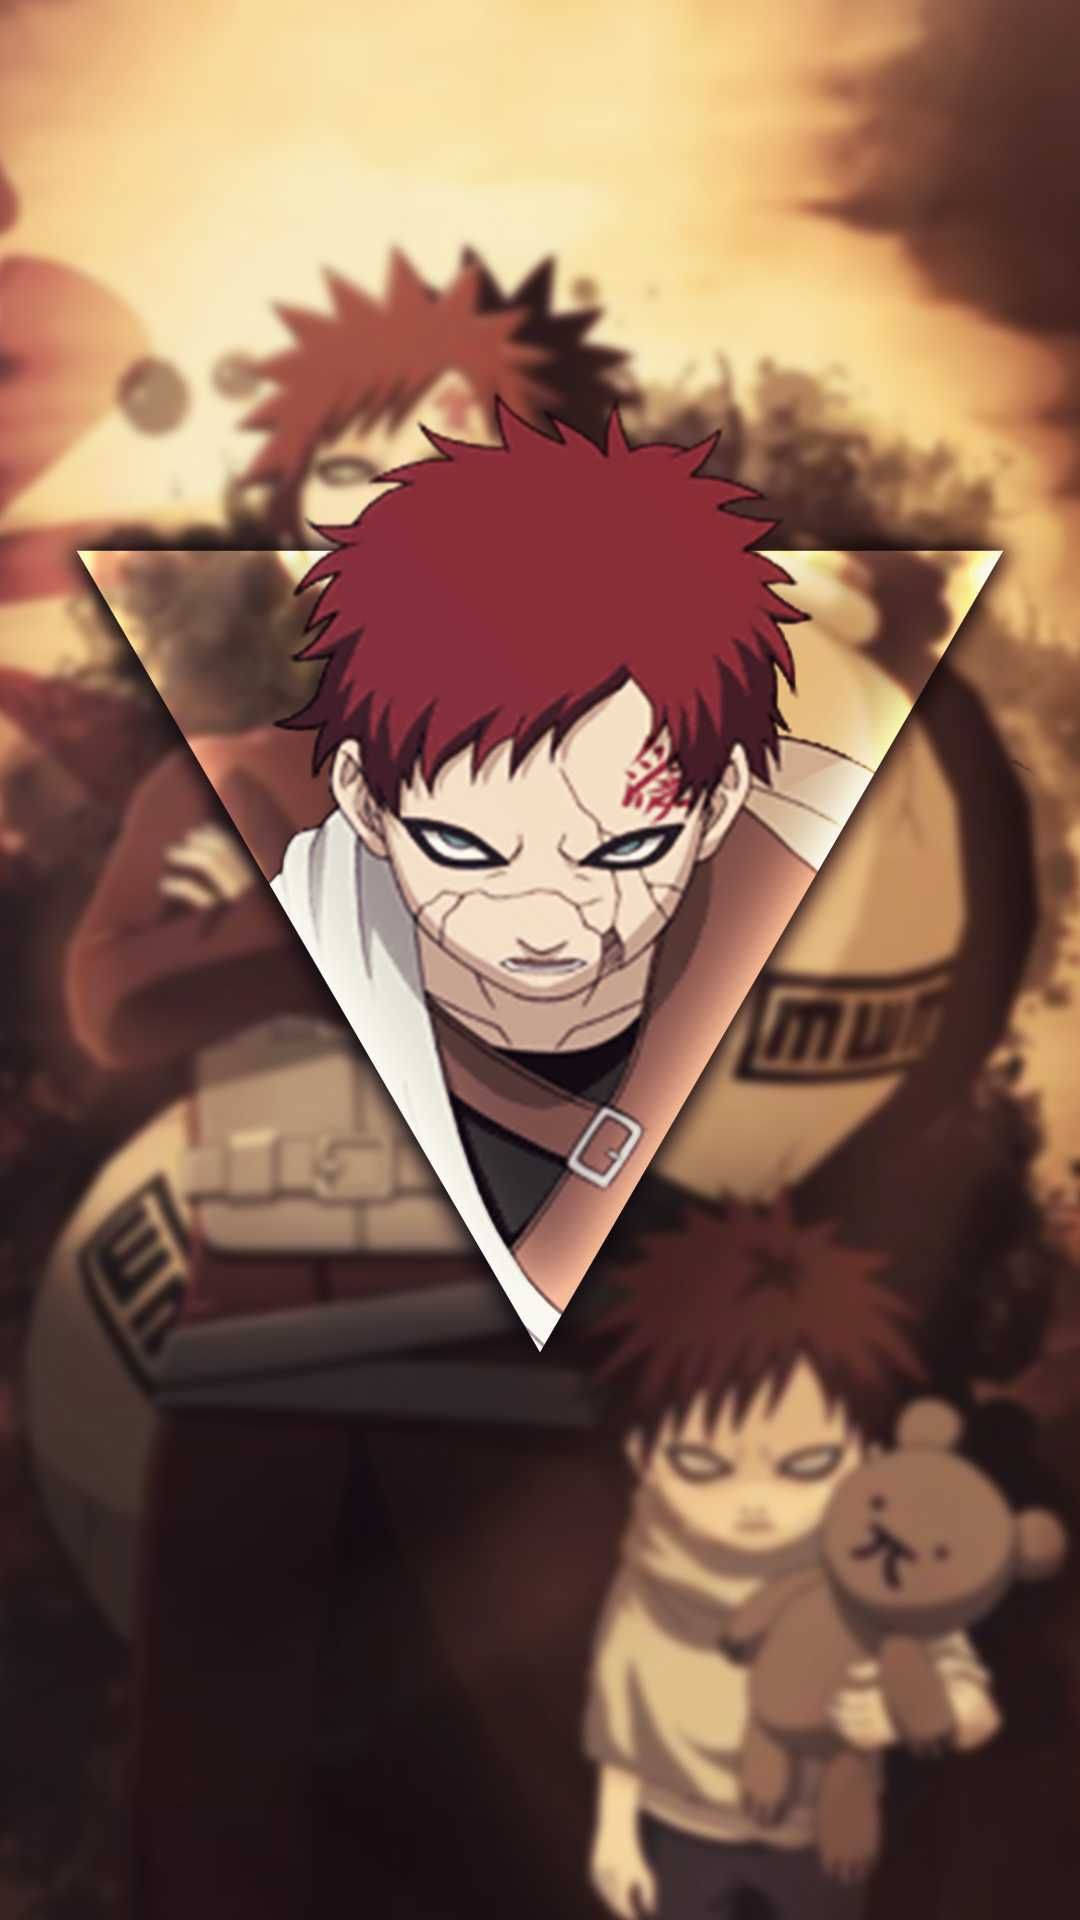 Einbild Von Einem Anime-charakter Mit Roten Haaren Wallpaper